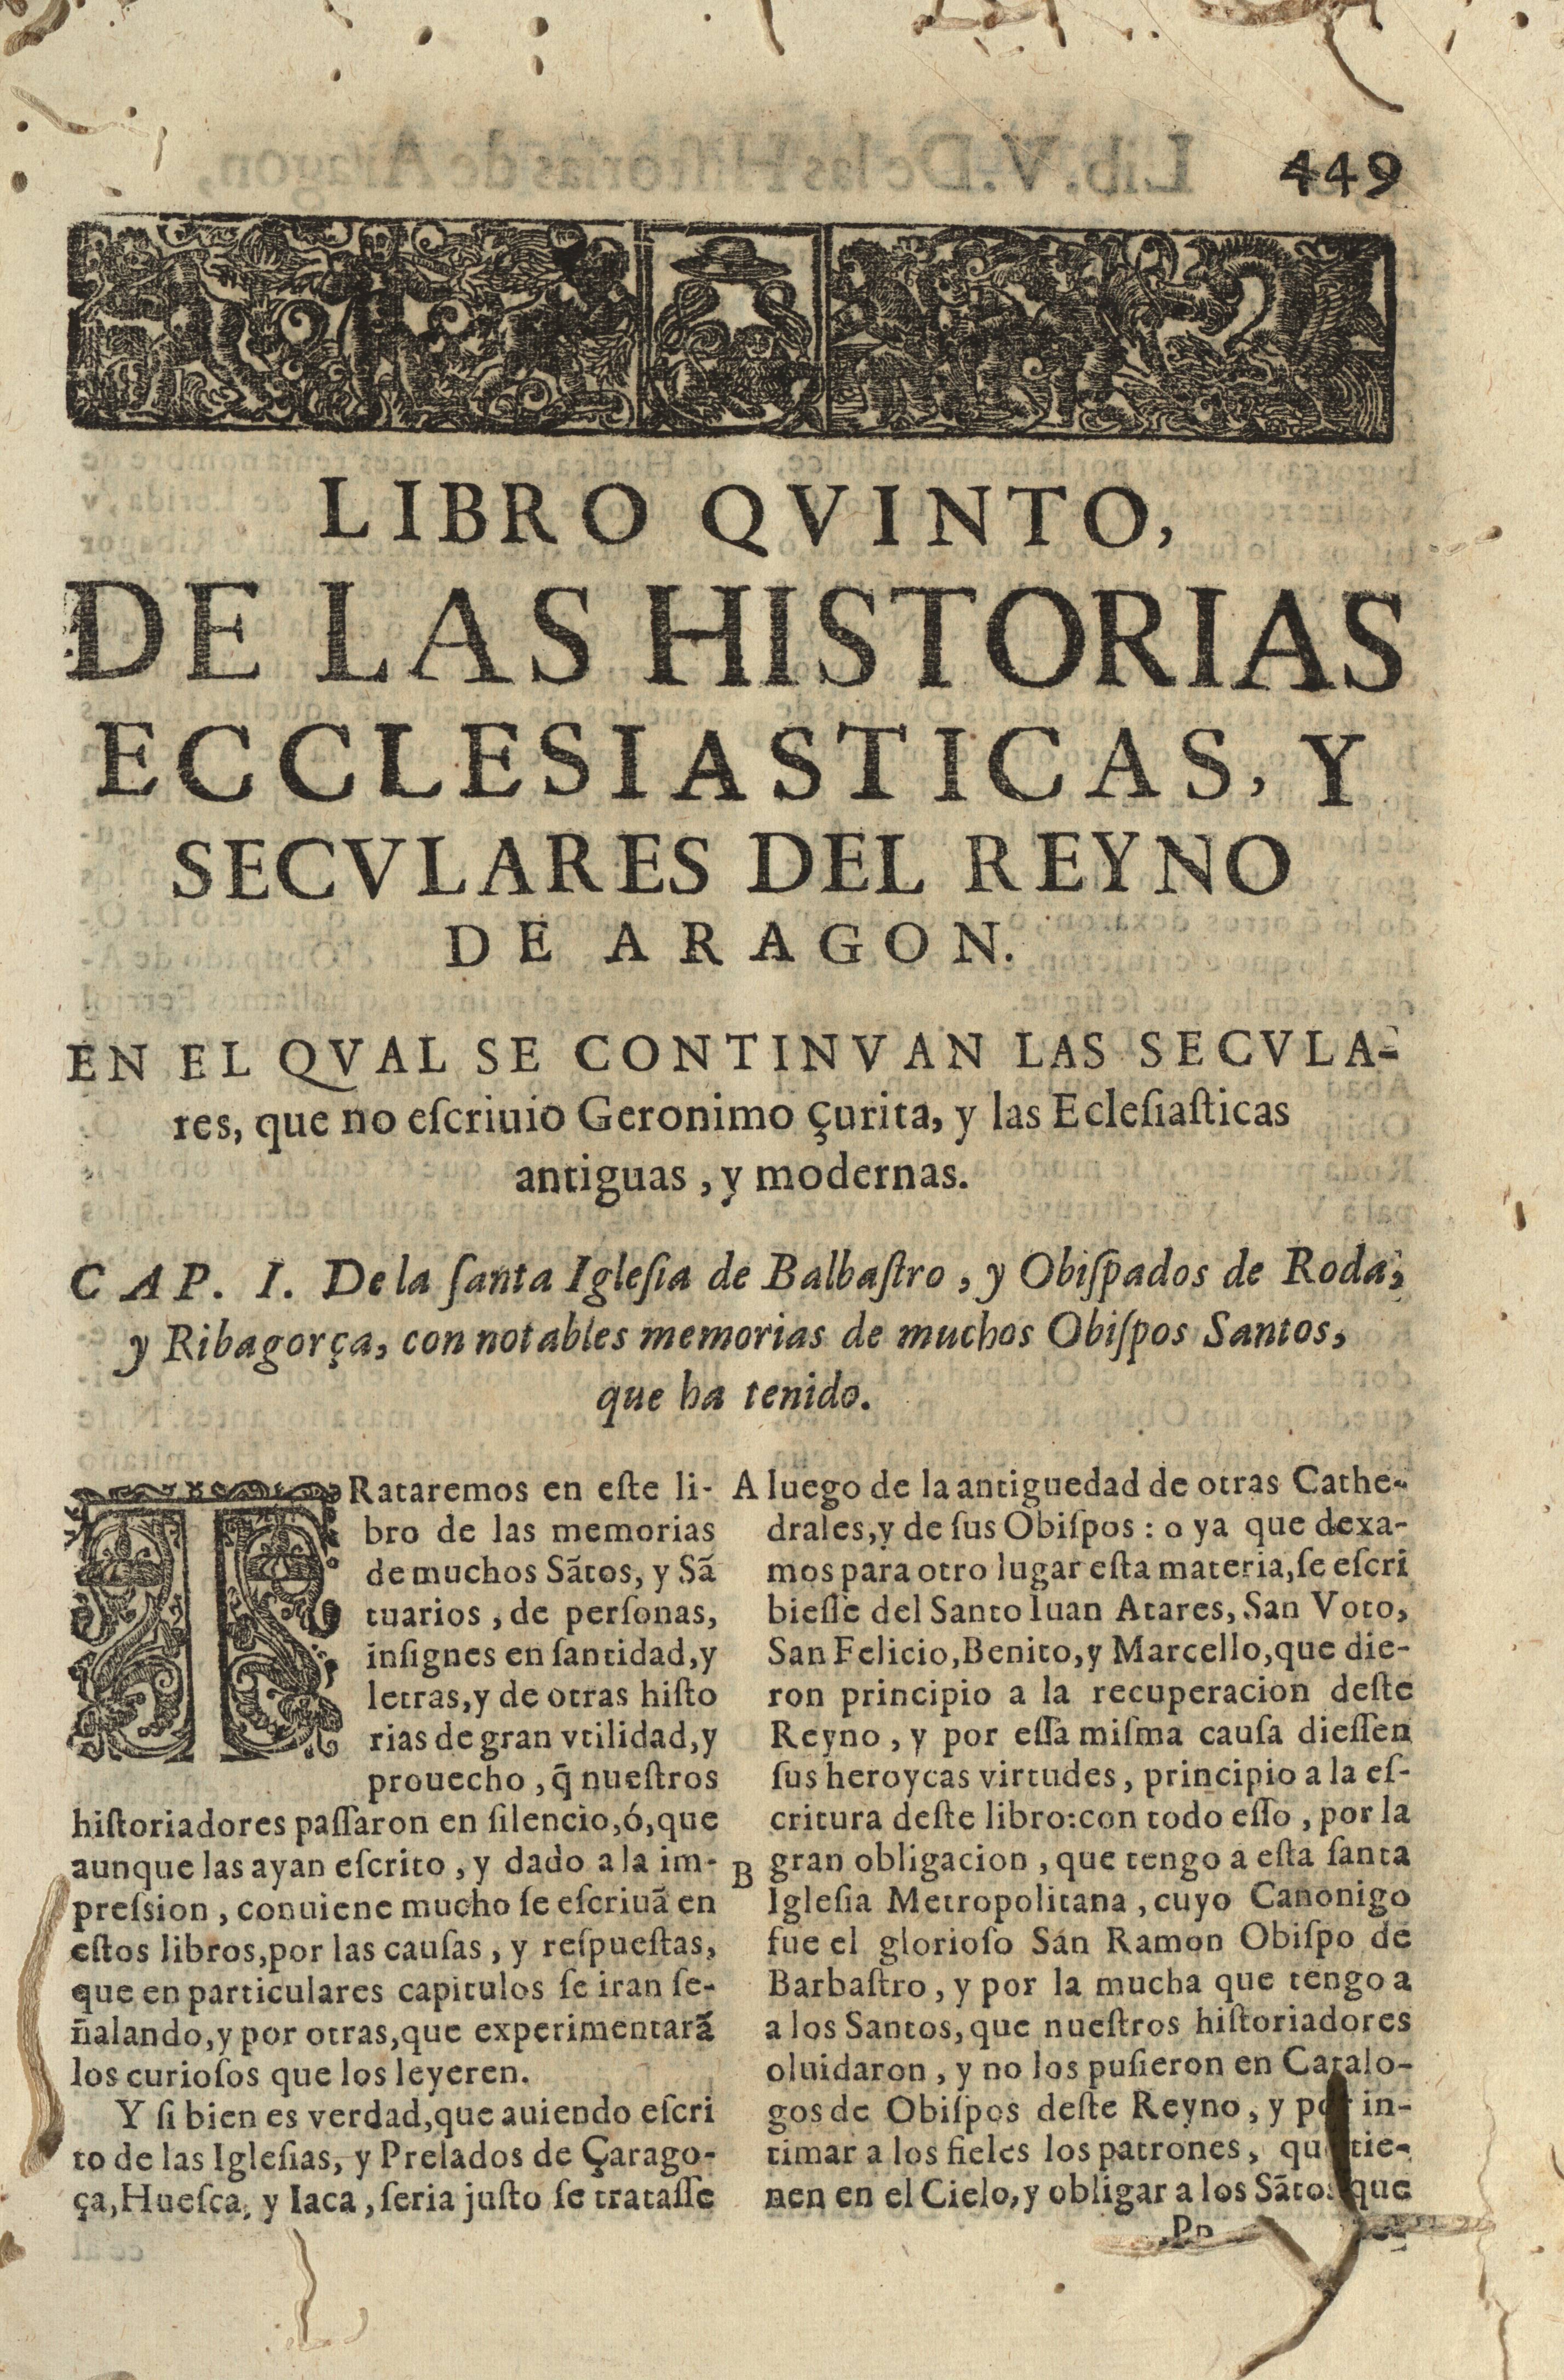 Libro qvinto, de las historias ecclesiasticas, y secvlares del reyno de Aragon